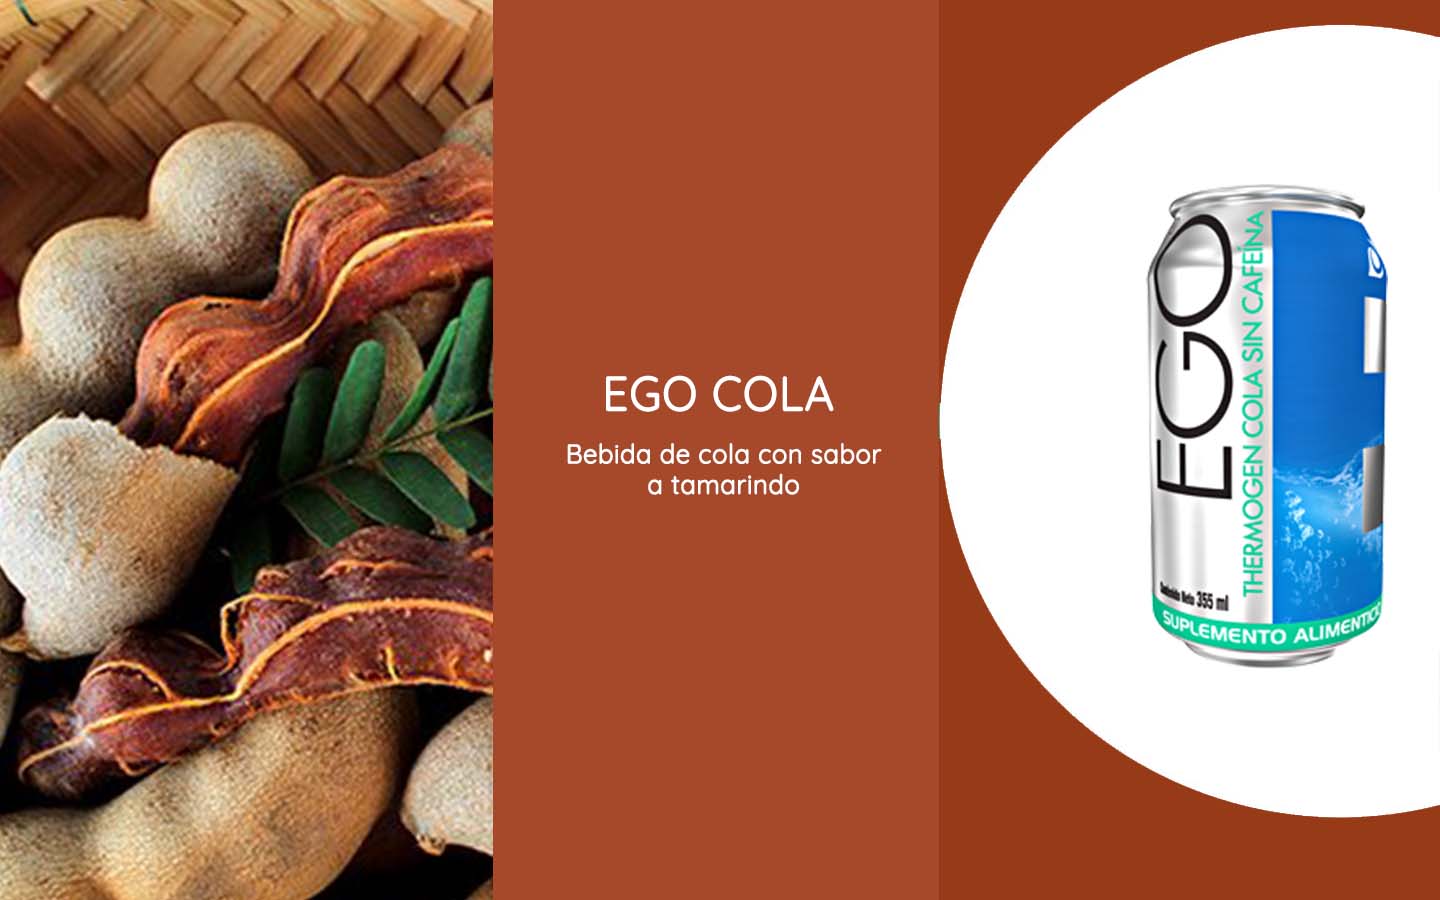 Ego cola es una bebida de Cola con sabor a tamarindo